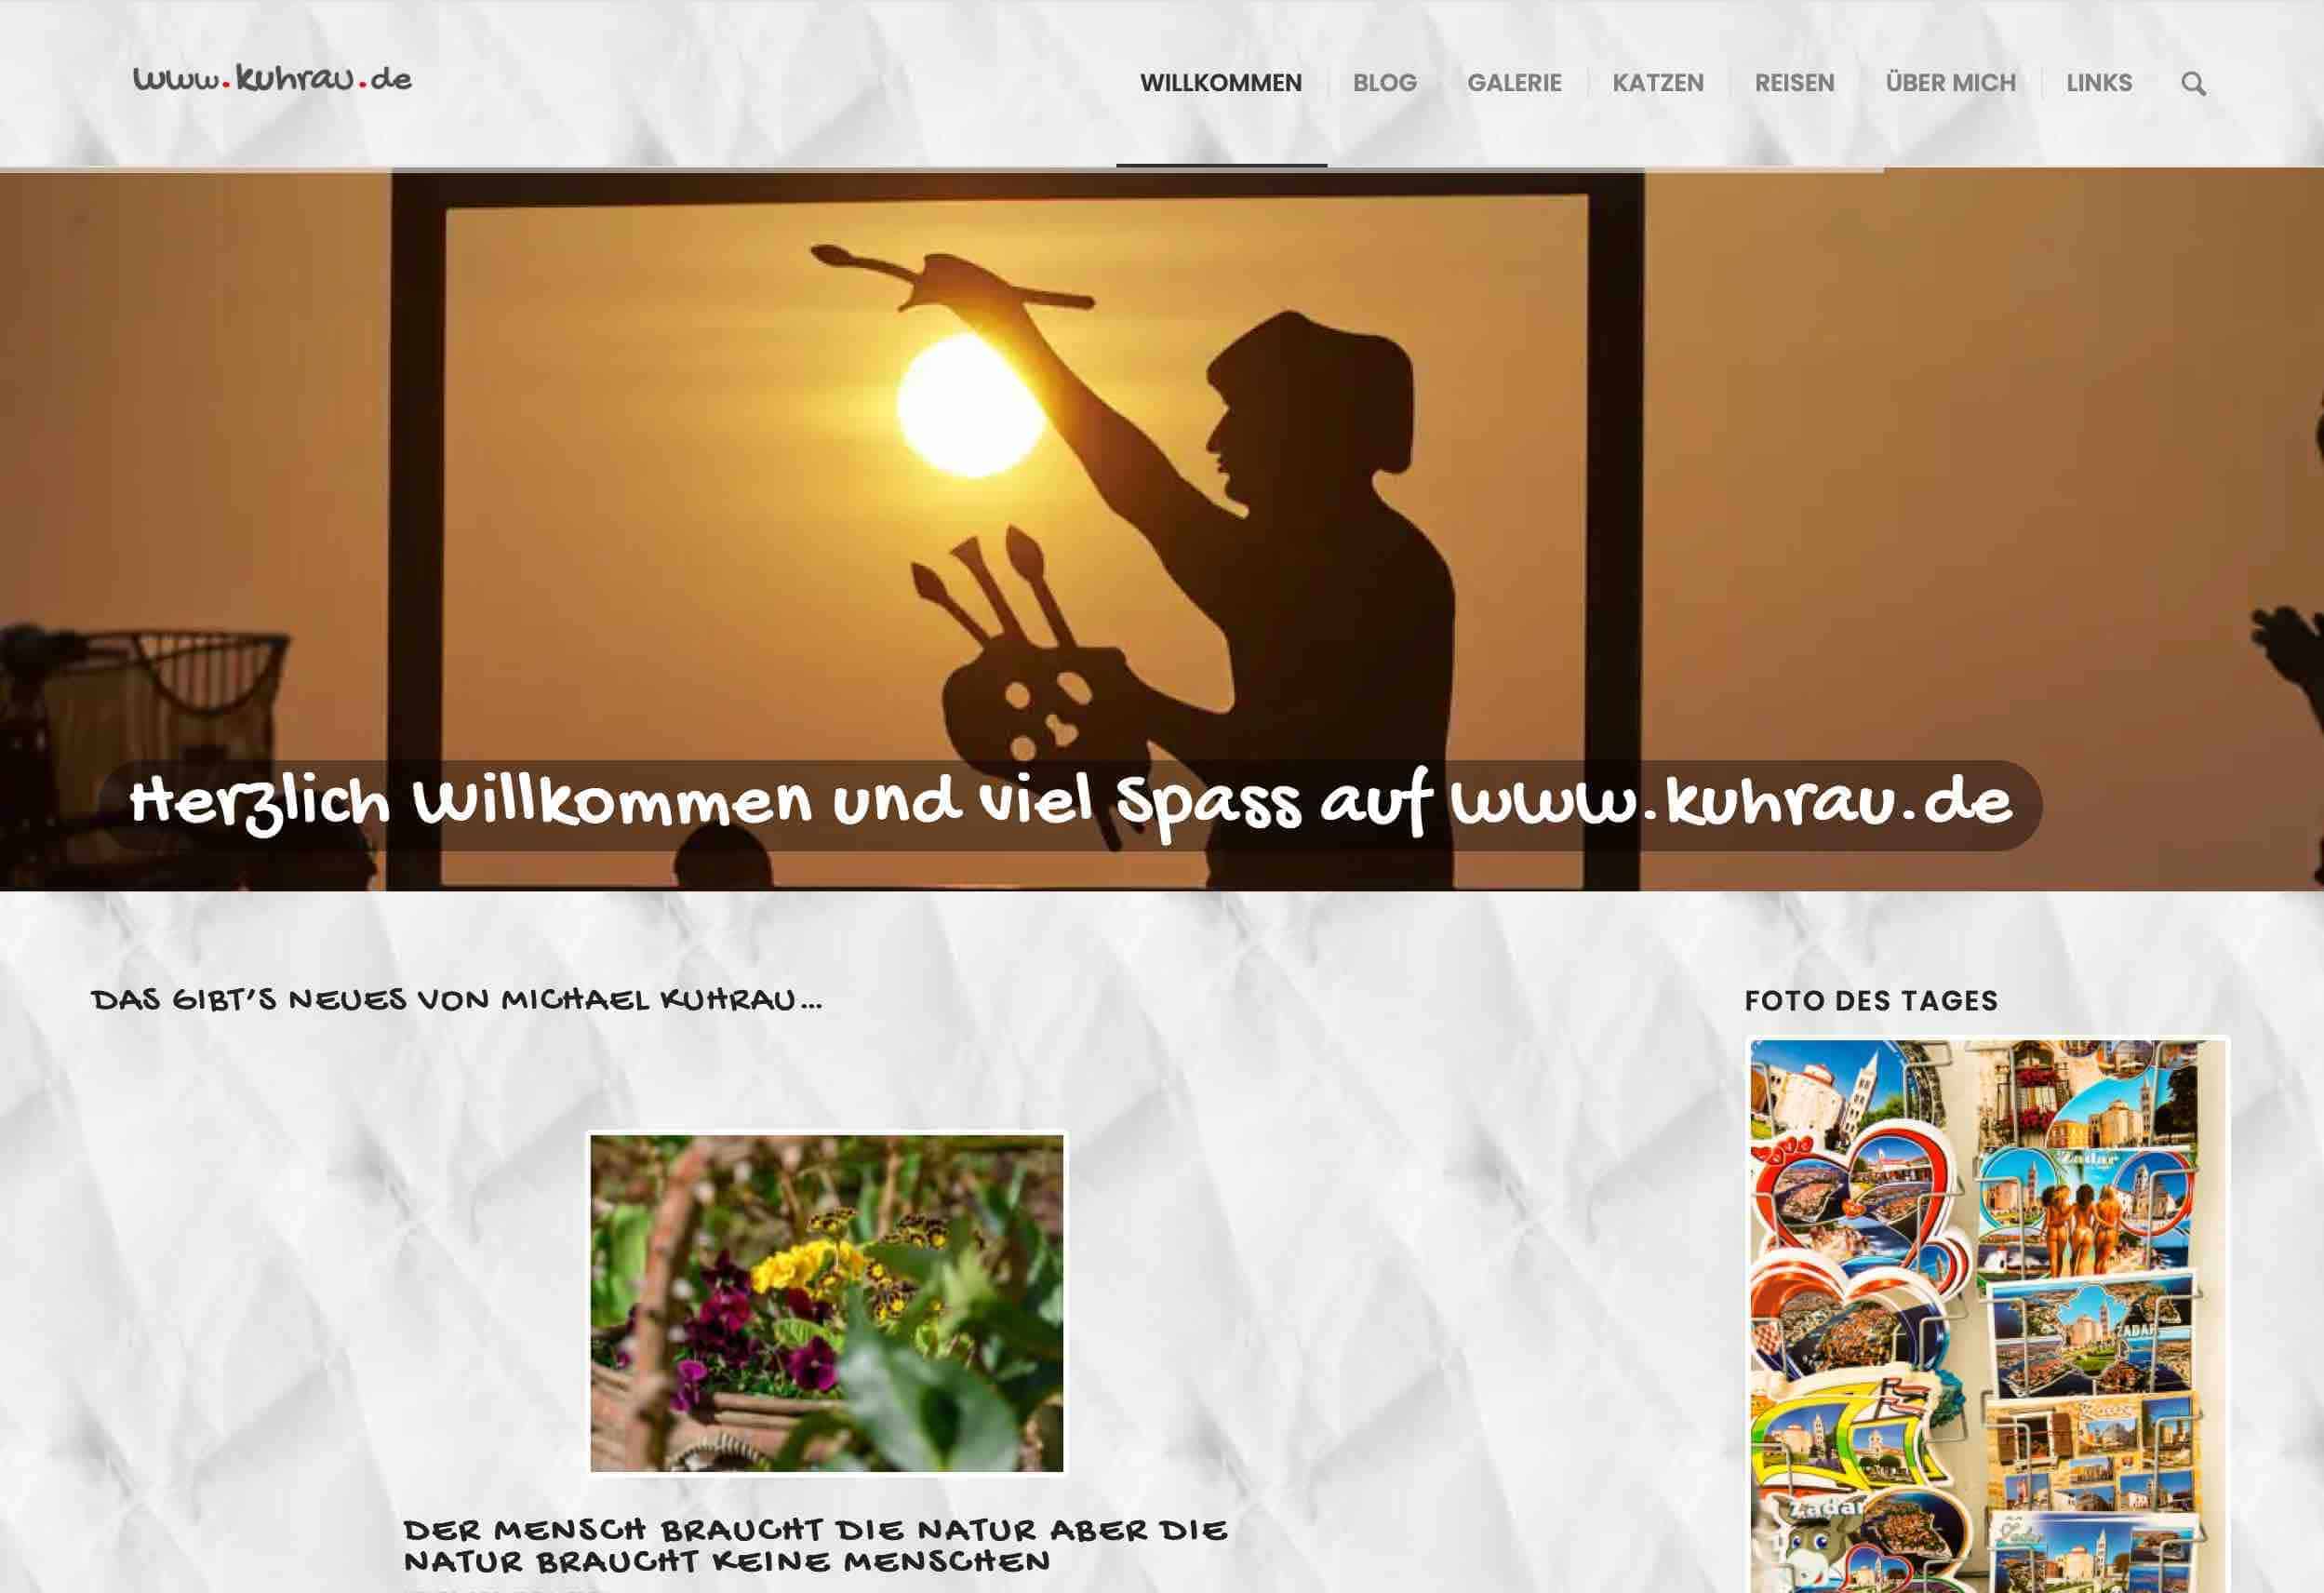 www.kuhrau.de